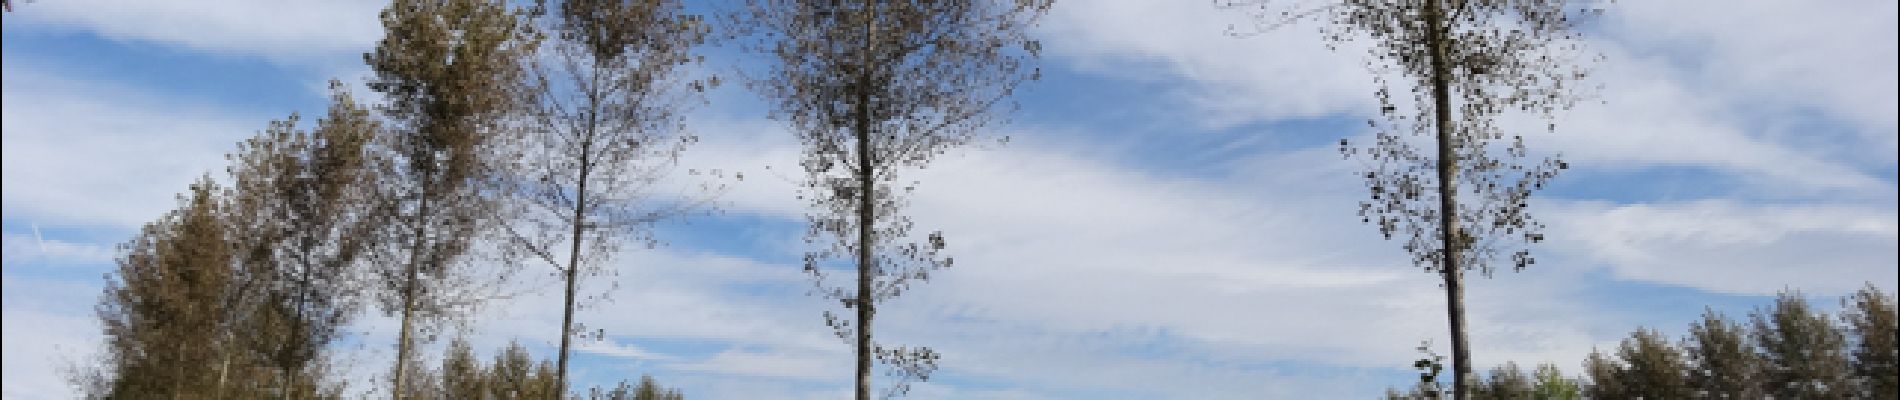 Punto de interés Herve - Etonnant alignement d'arbres - Photo